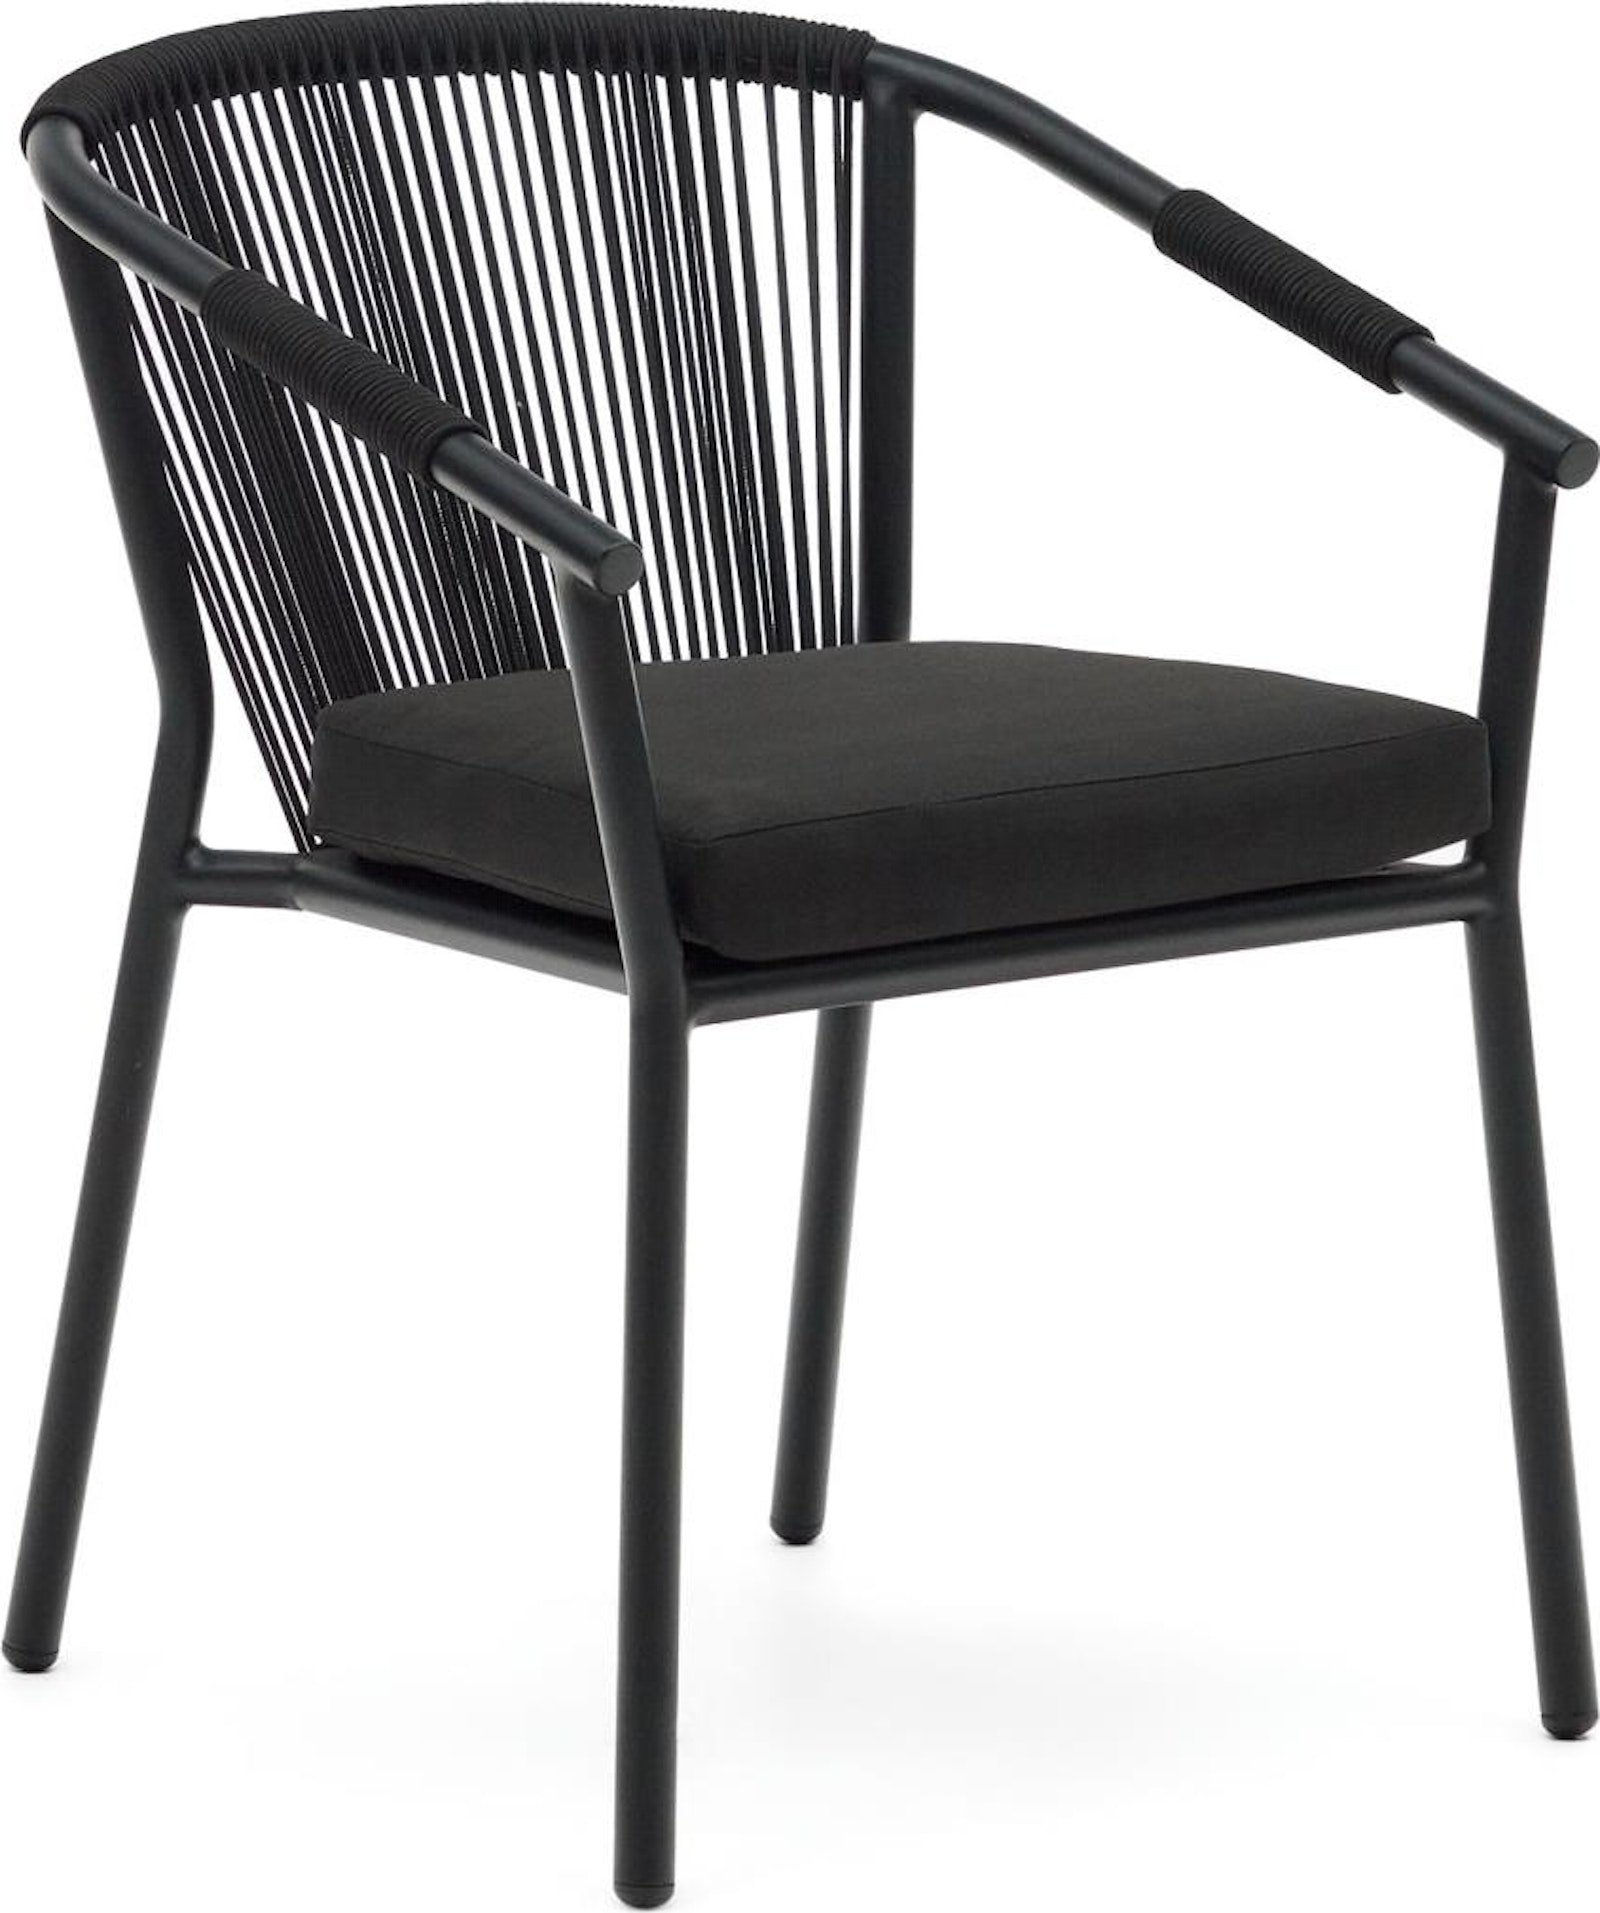 12: Xelida, Udendørs stol, nordisk, moderne, metal by Laforma (H: 79 cm. x B: 59 cm. x L: 63 cm., Sort)